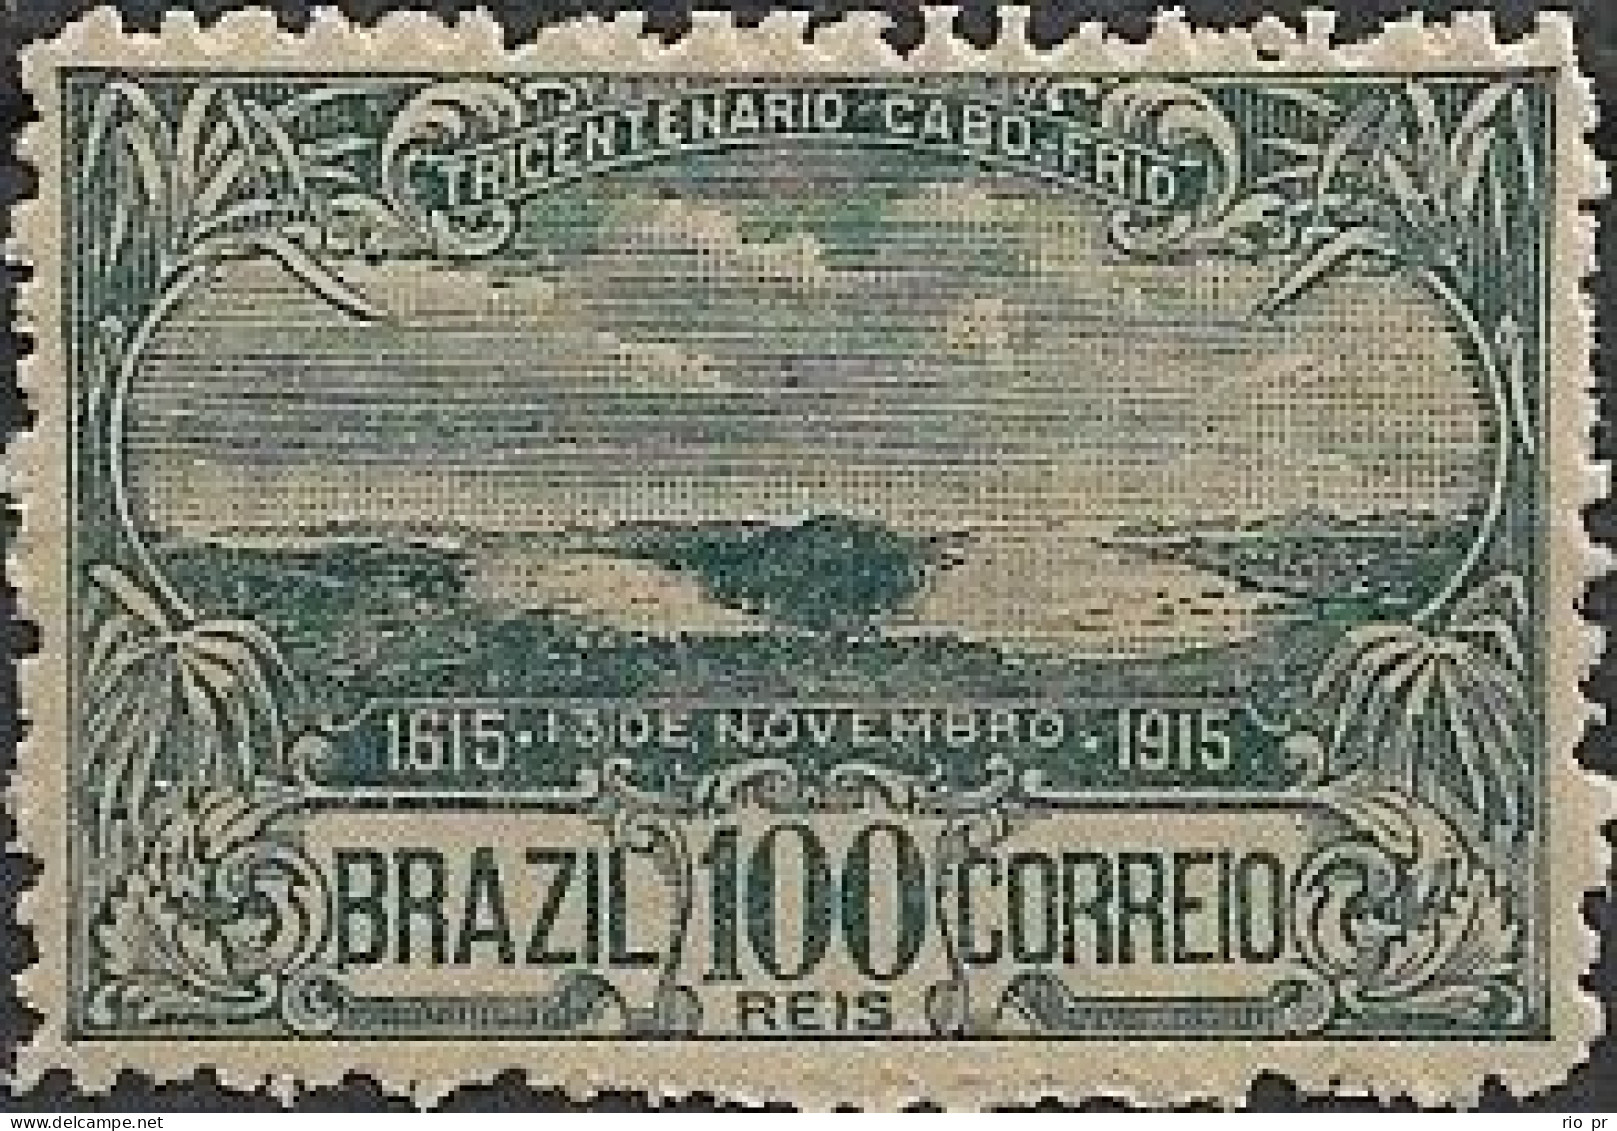 BRAZIL - 3rd CENTENARY OF THE CITY OF CABO FRIO/RJ 1915 - MNH - Ongebruikt